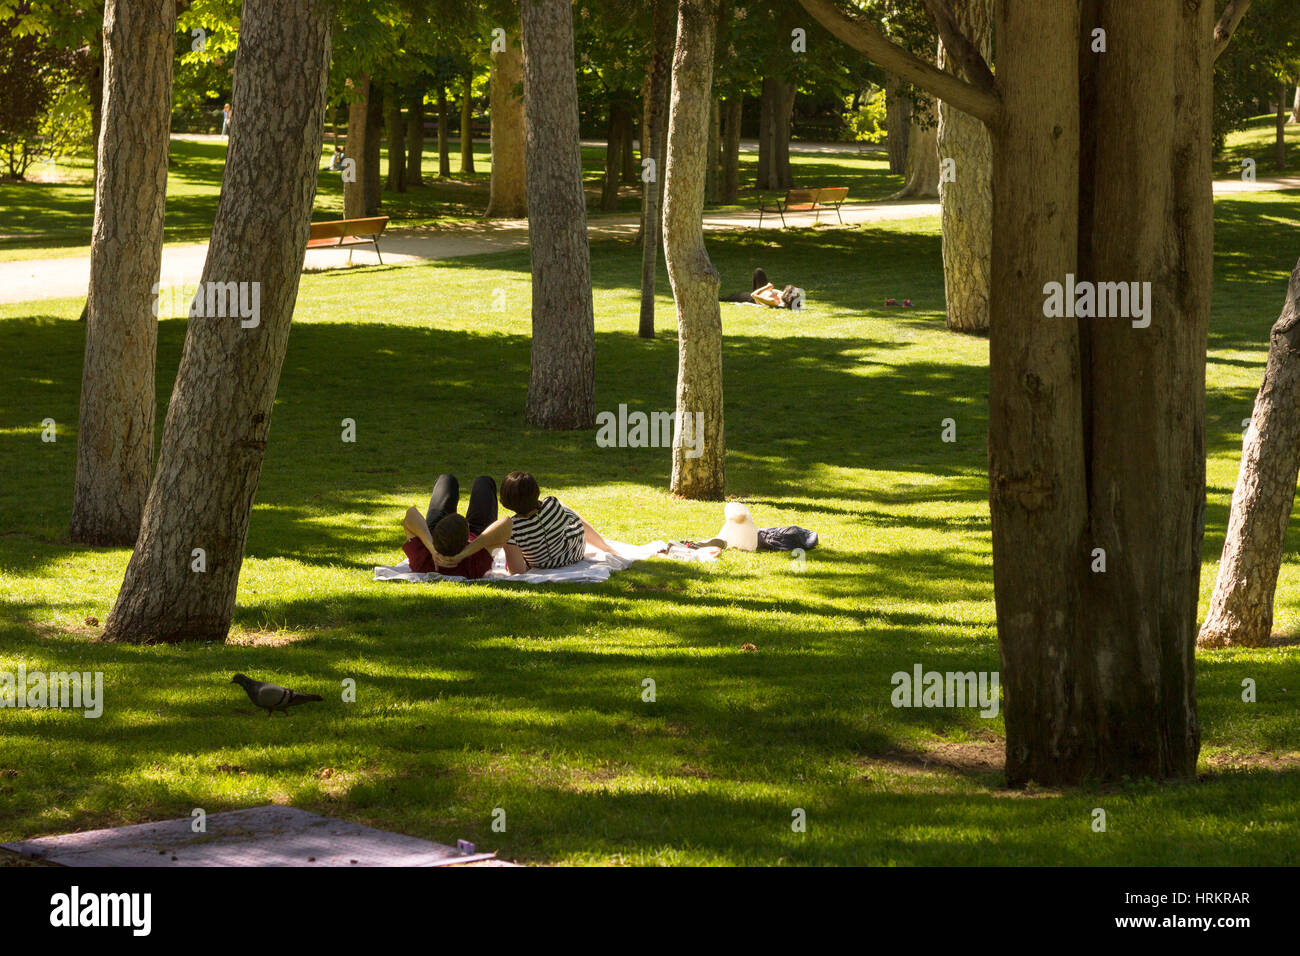 Una pareja y una persona en el fondo disfrutando del sol de tarde de verano en el Parque del Retiro, Madrid, España Foto de stock